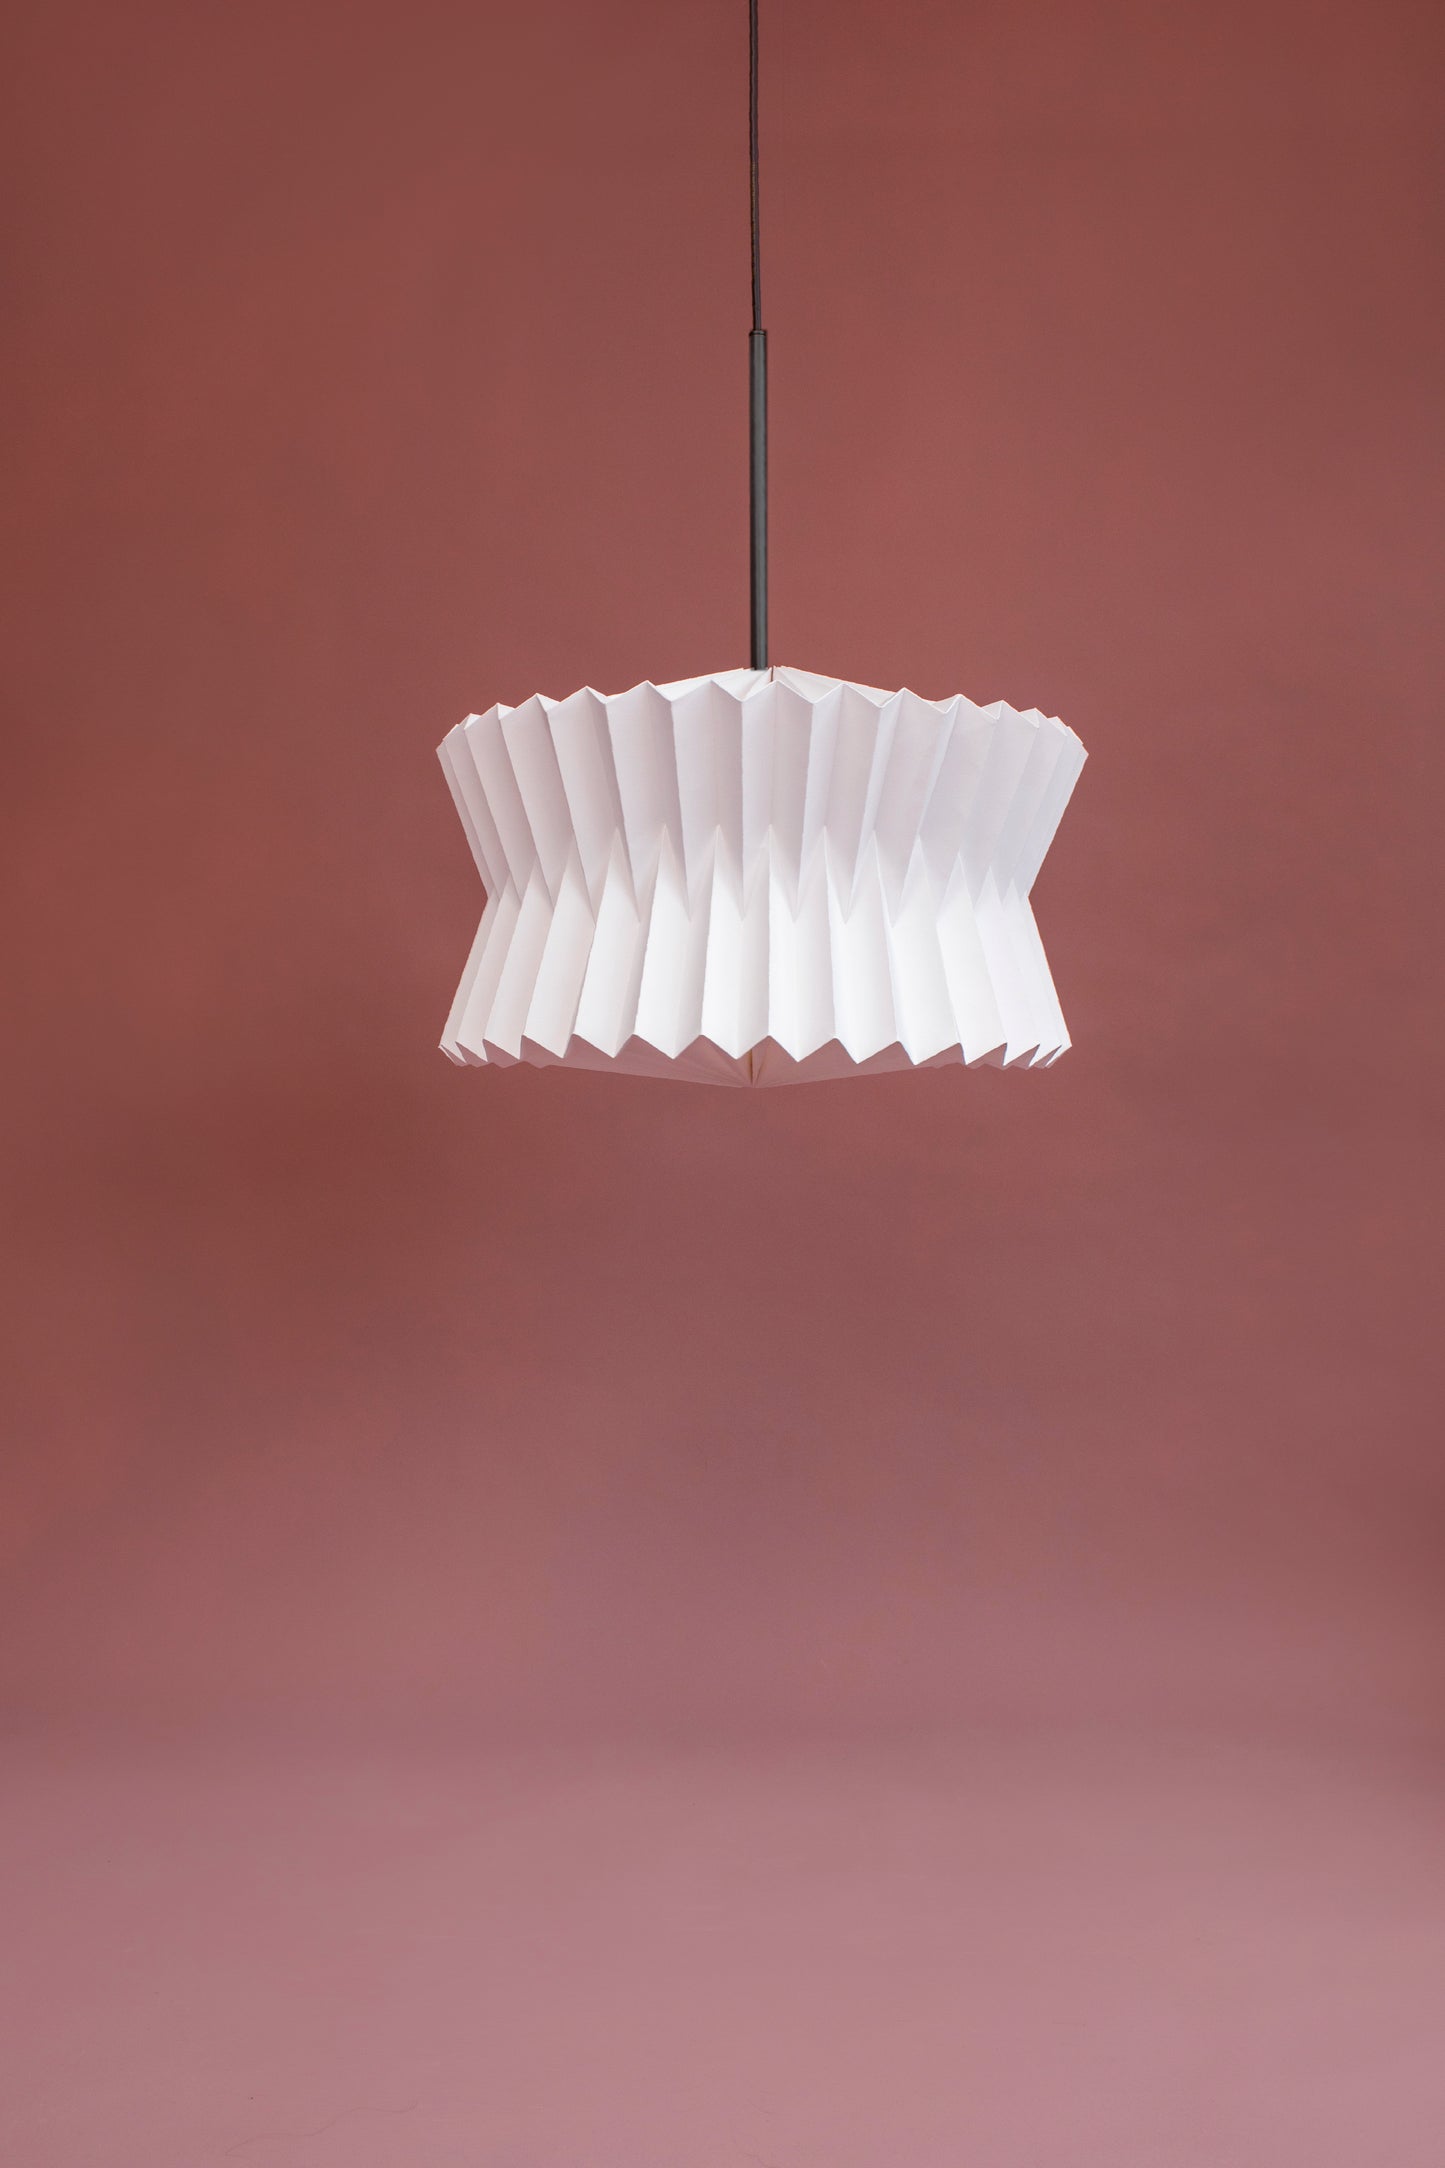 Lámpara colgante marca Plié referencia Altair. Caperuza liviana hecha de papel plegado. Ideal para iluminar espacios y darle diseño al hogar. Diseño Colombiano, hecho a mano.